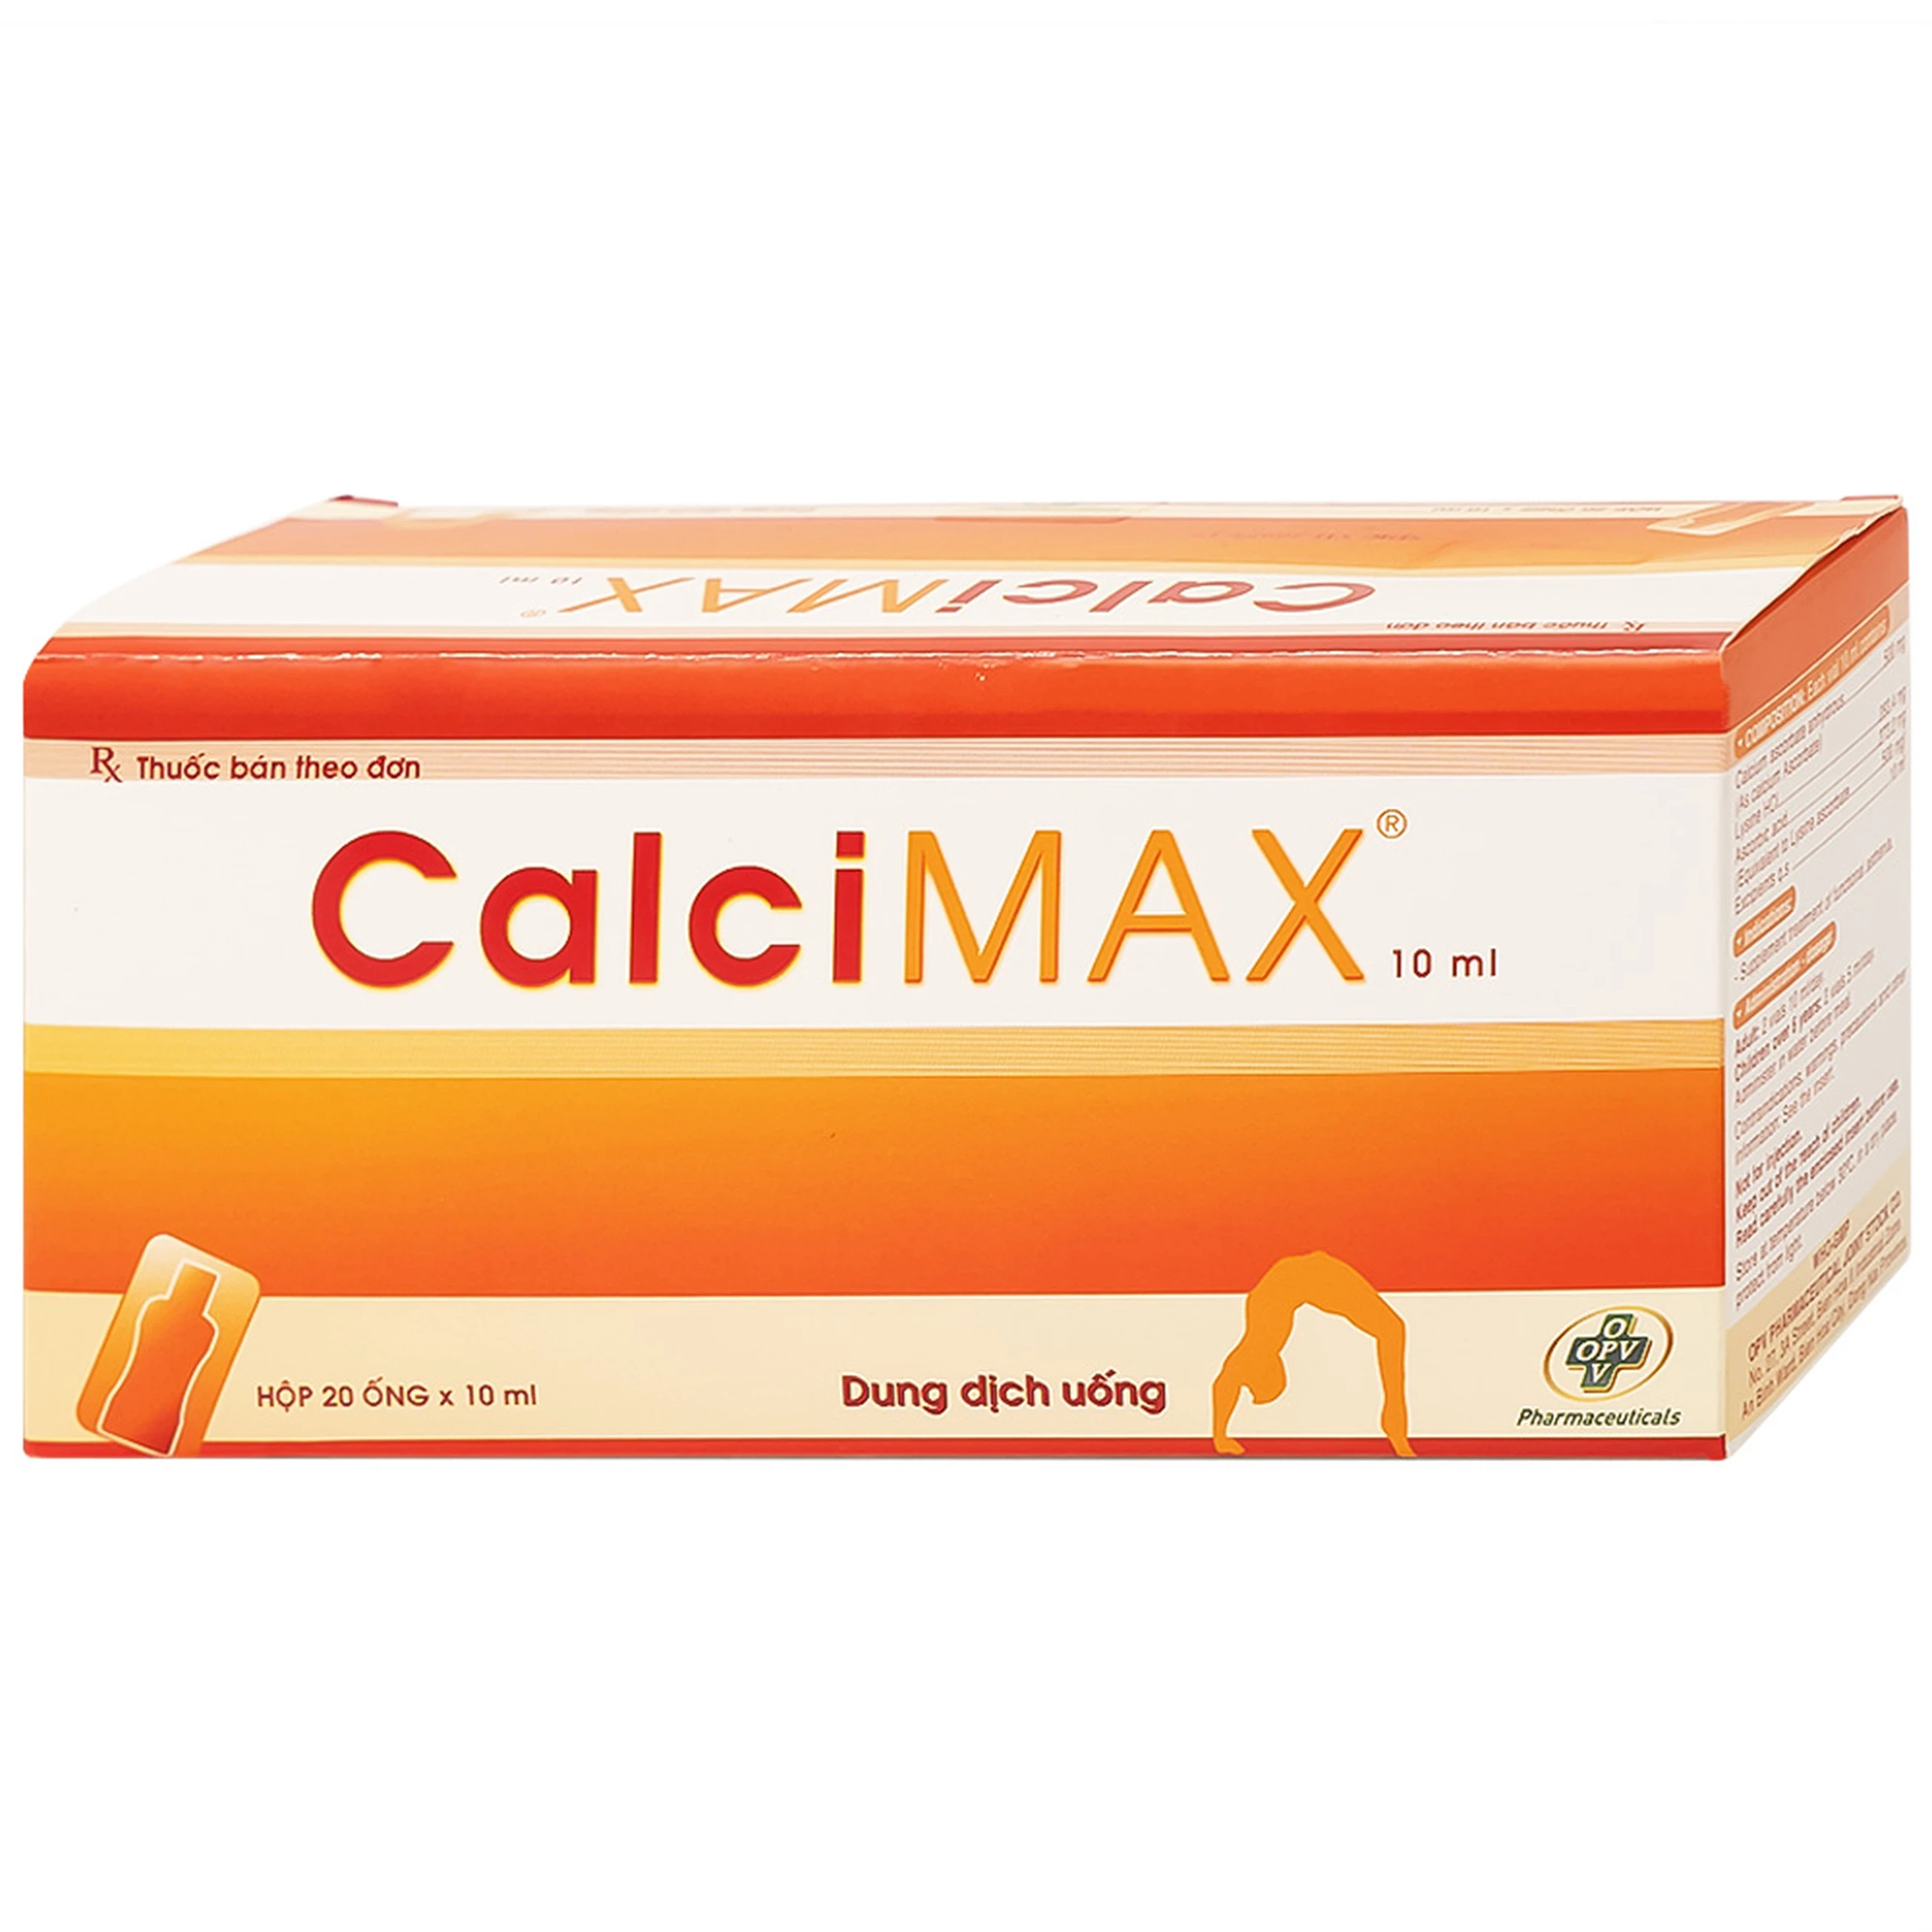 Dung dịch uống CalciMAX OPV giúp ngon miệng, chắc khỏe xương (20 ống x 10ml)